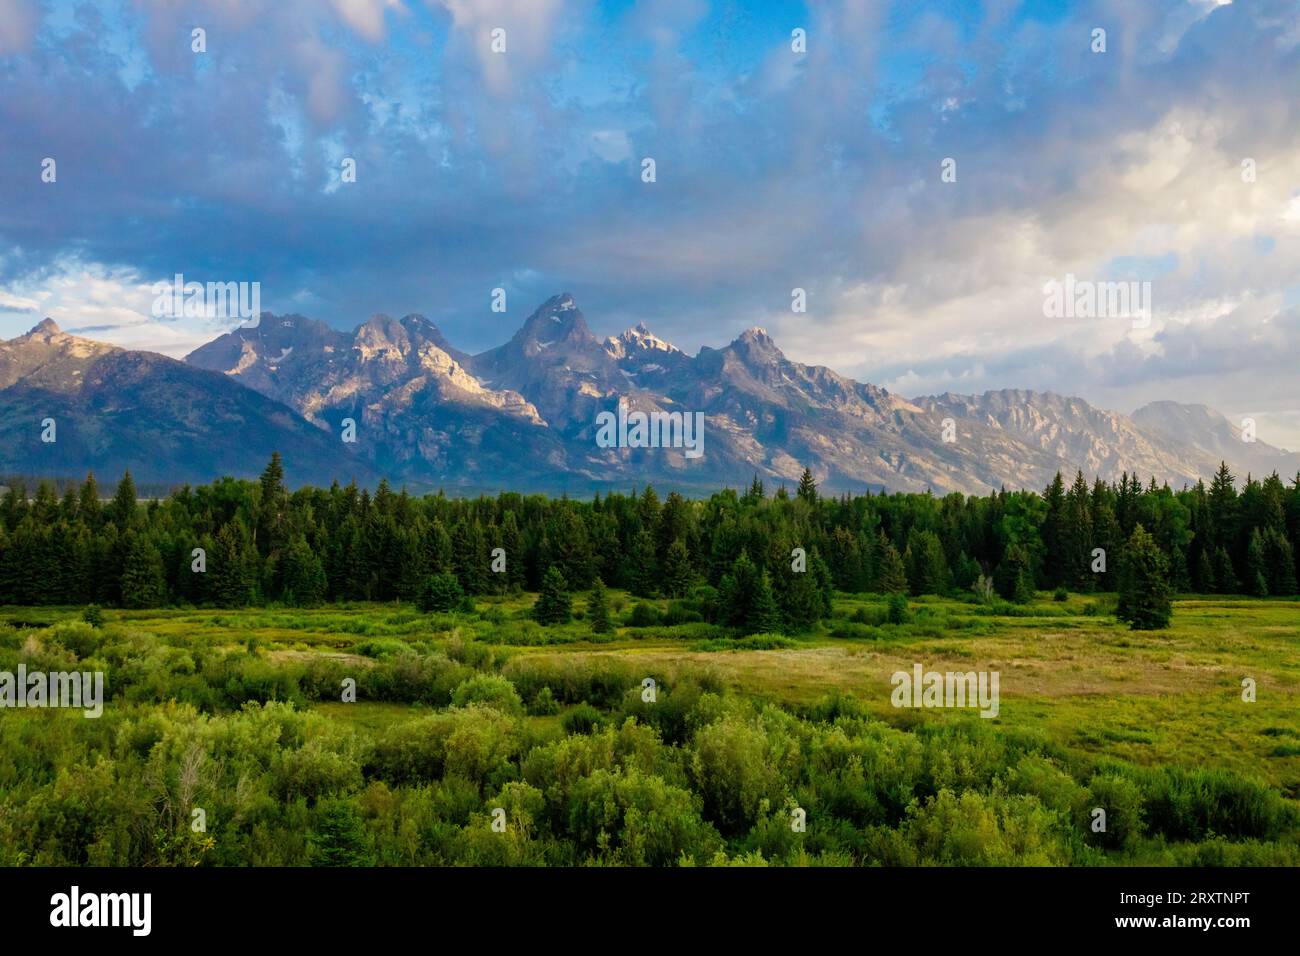 Plaines et montagnes du parc national du Grand Teton, Jackson, Wyoming, États-Unis d'Amérique, Amérique du Nord Banque D'Images